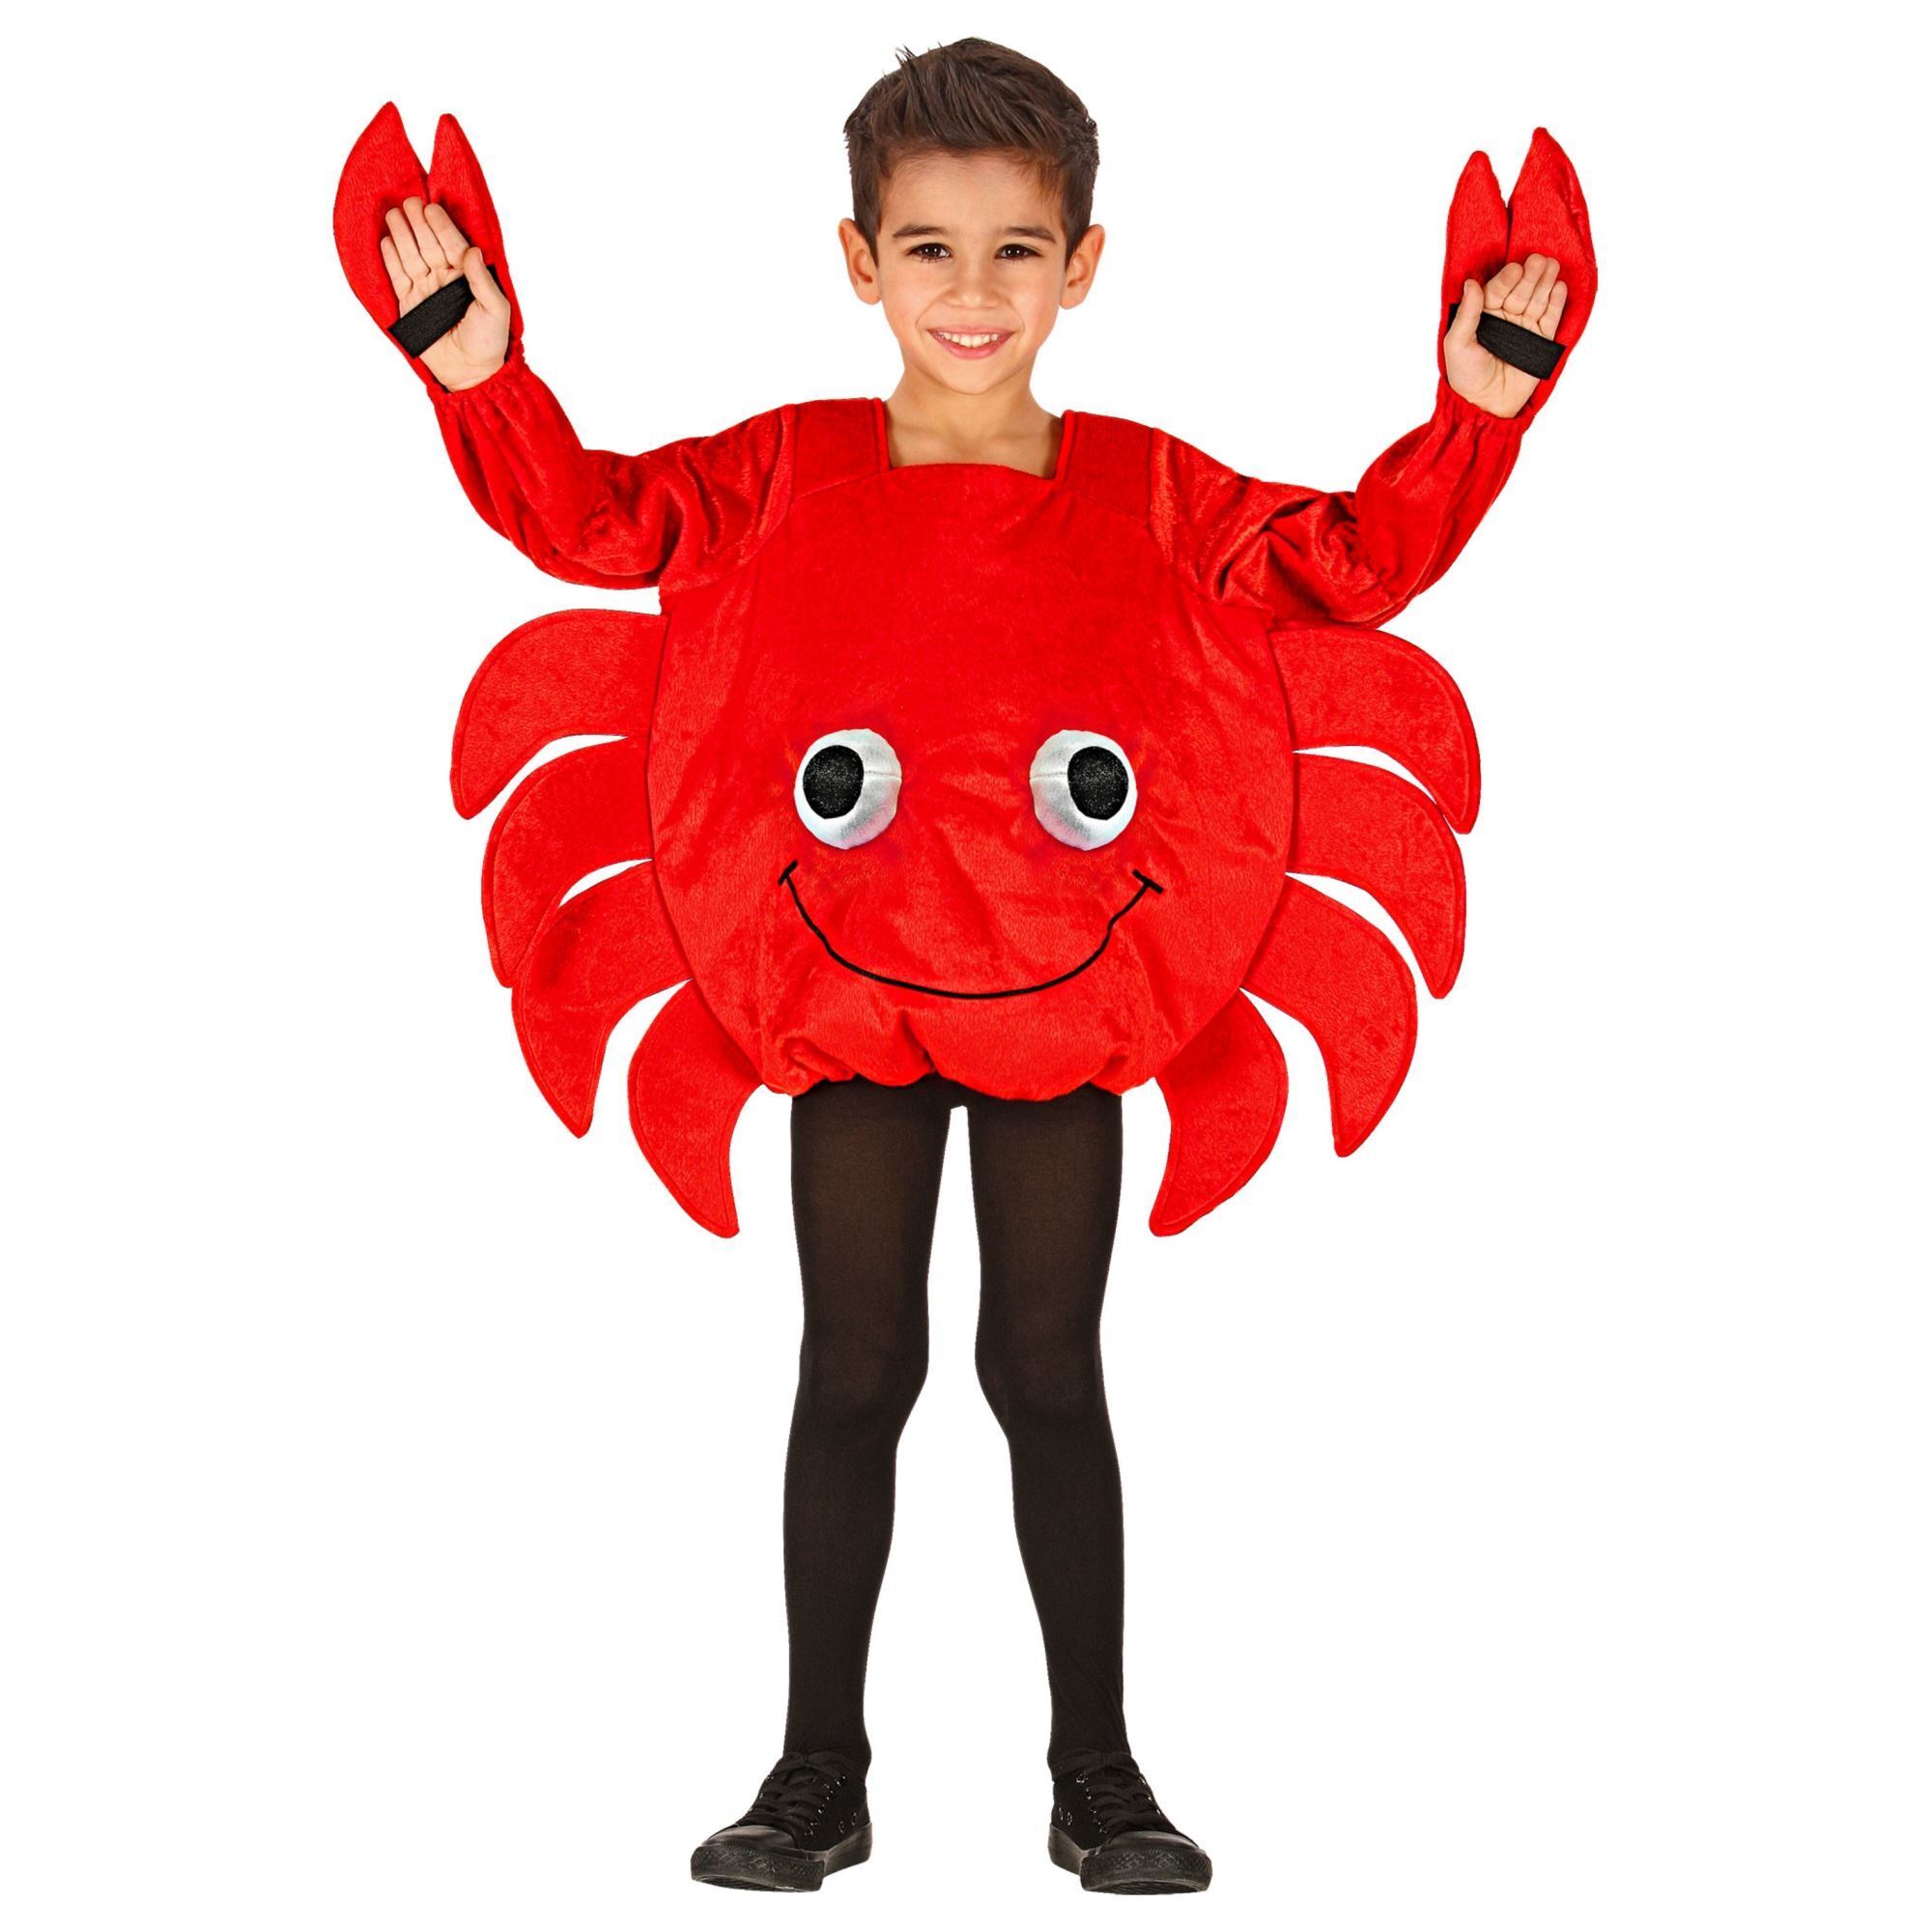 Krabben kostuum de rode krab kinderen